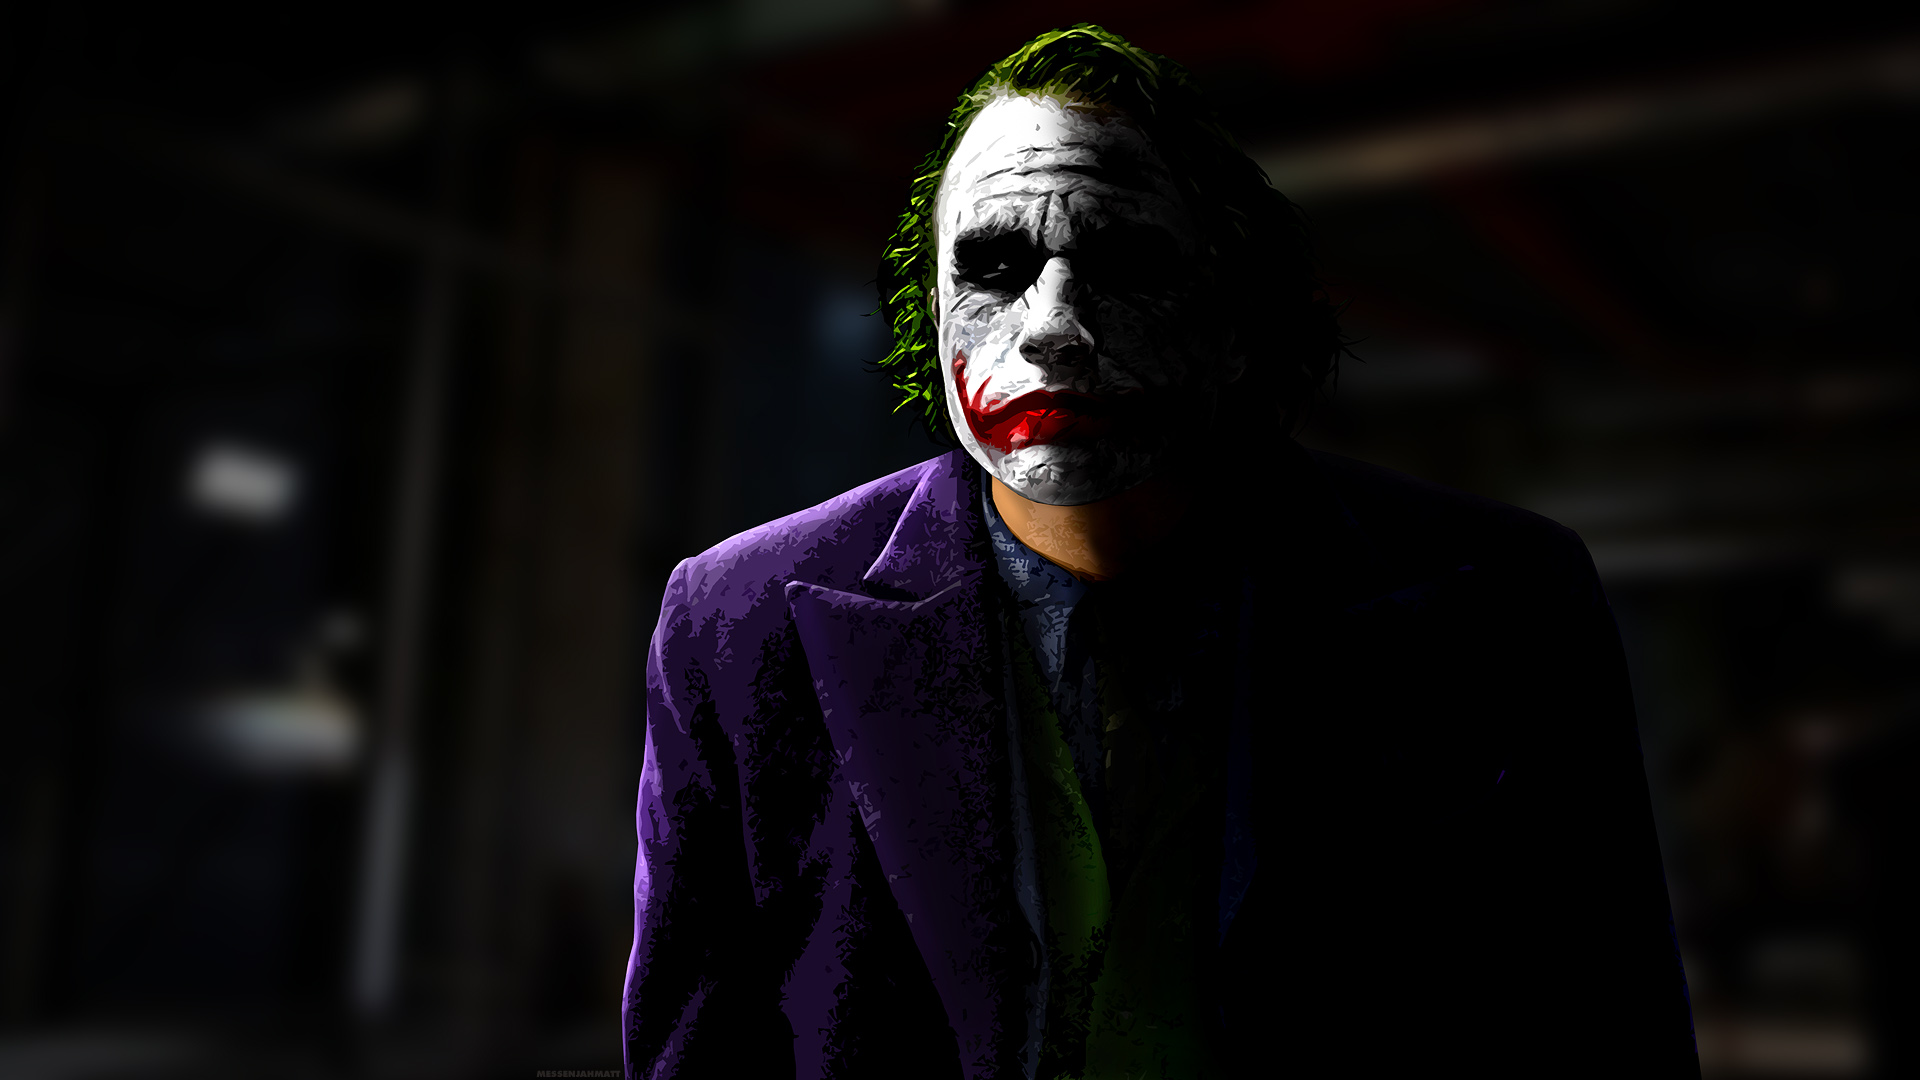  Joker HQ Background Images